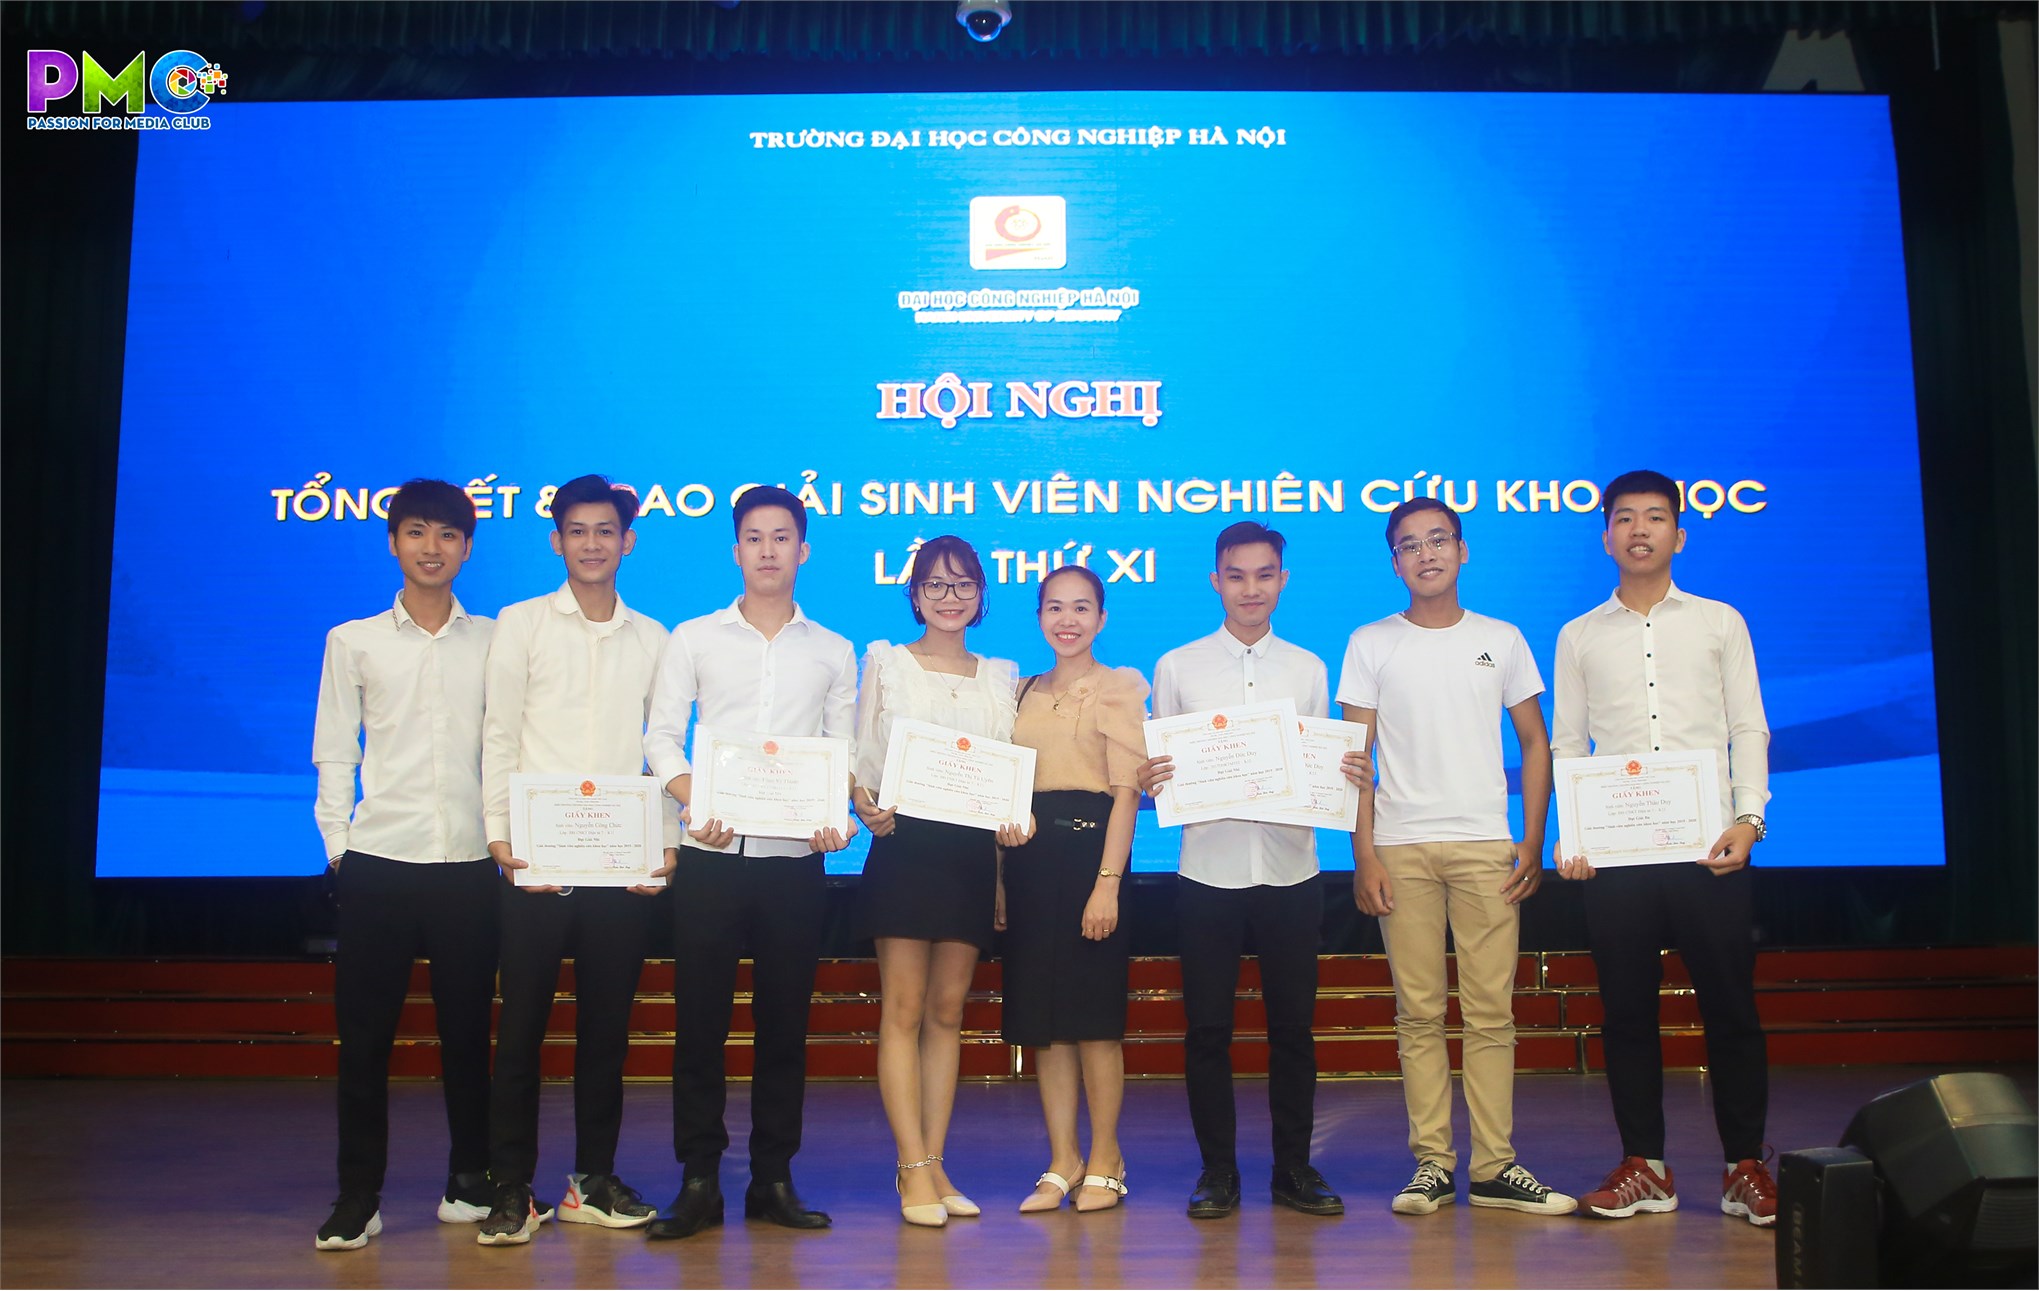 Sinh viên Khoa Điện tử giành 2 giải nhất trong hội Hội nghị tổng kết và trao giải sinh viên nghiên cứu khoa học lần thứ XI